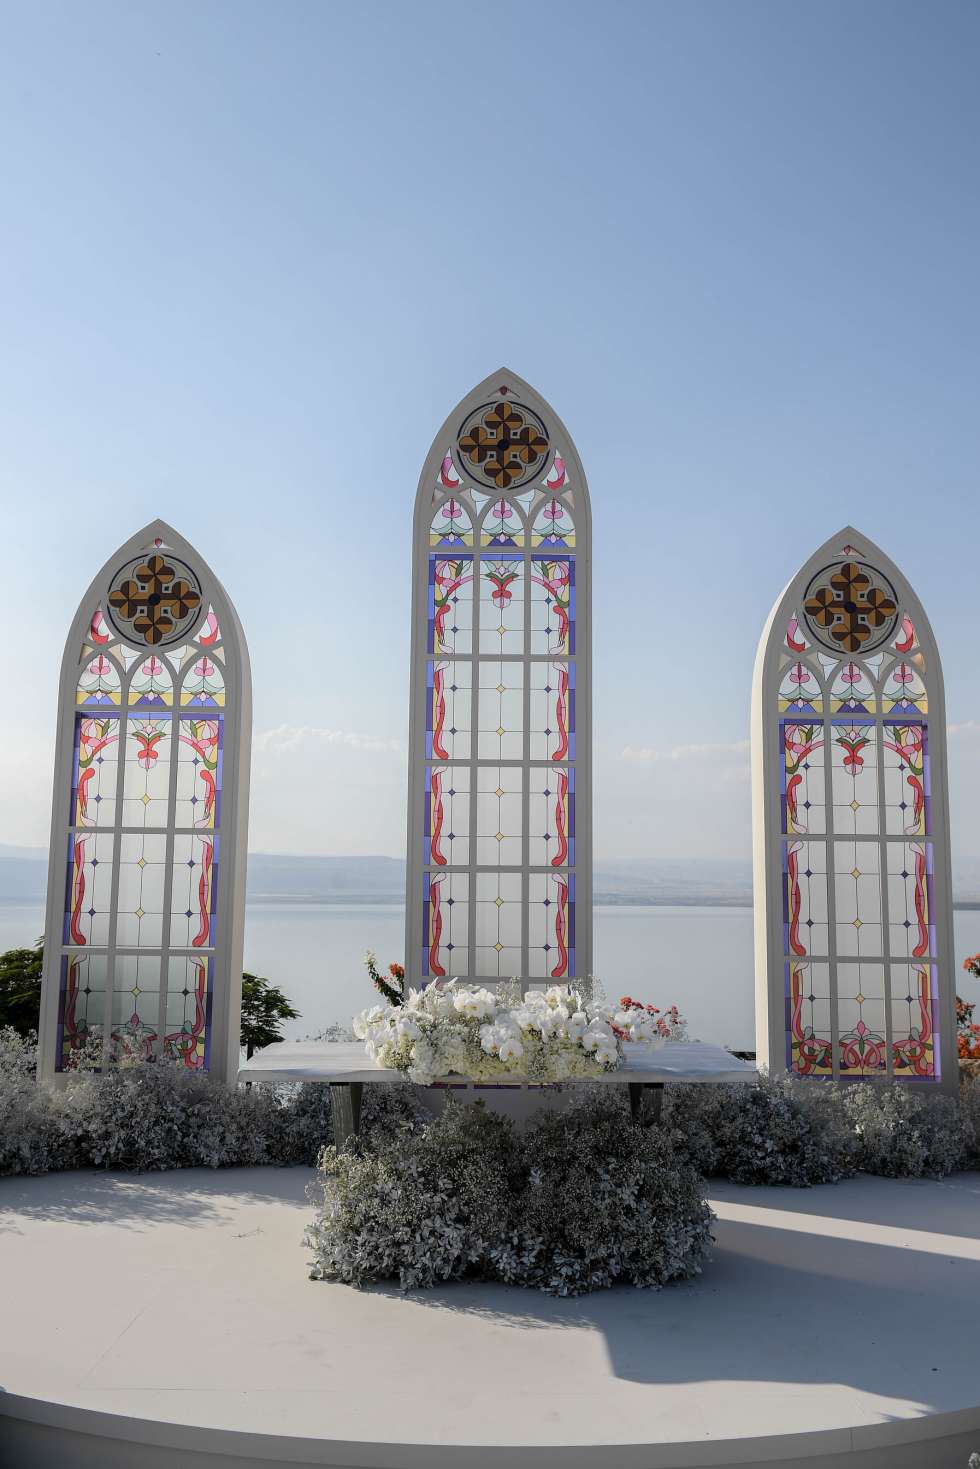 An Ethereal Summer Fairytale at The Dead Sea